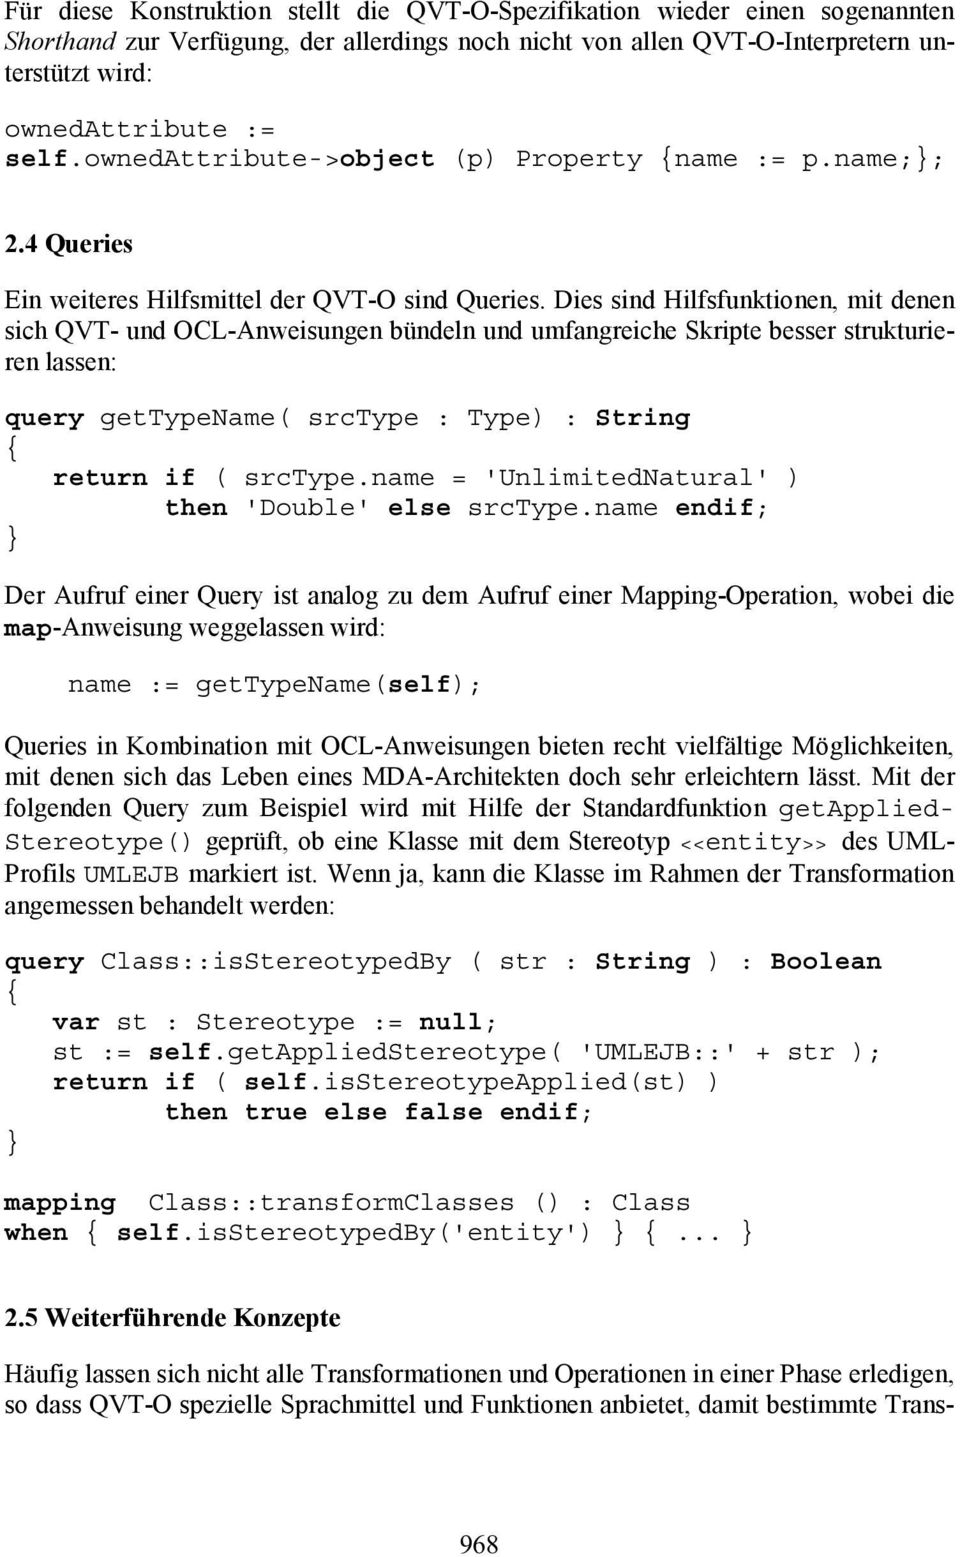 Dies sind Hilfsfunktionen, mit denen sich QVT- und OCL-Anweisungen bündeln und umfangreiche Skripte besser strukturierenlassen: query gettypename( srctype : Type) : String return if ( srctype.